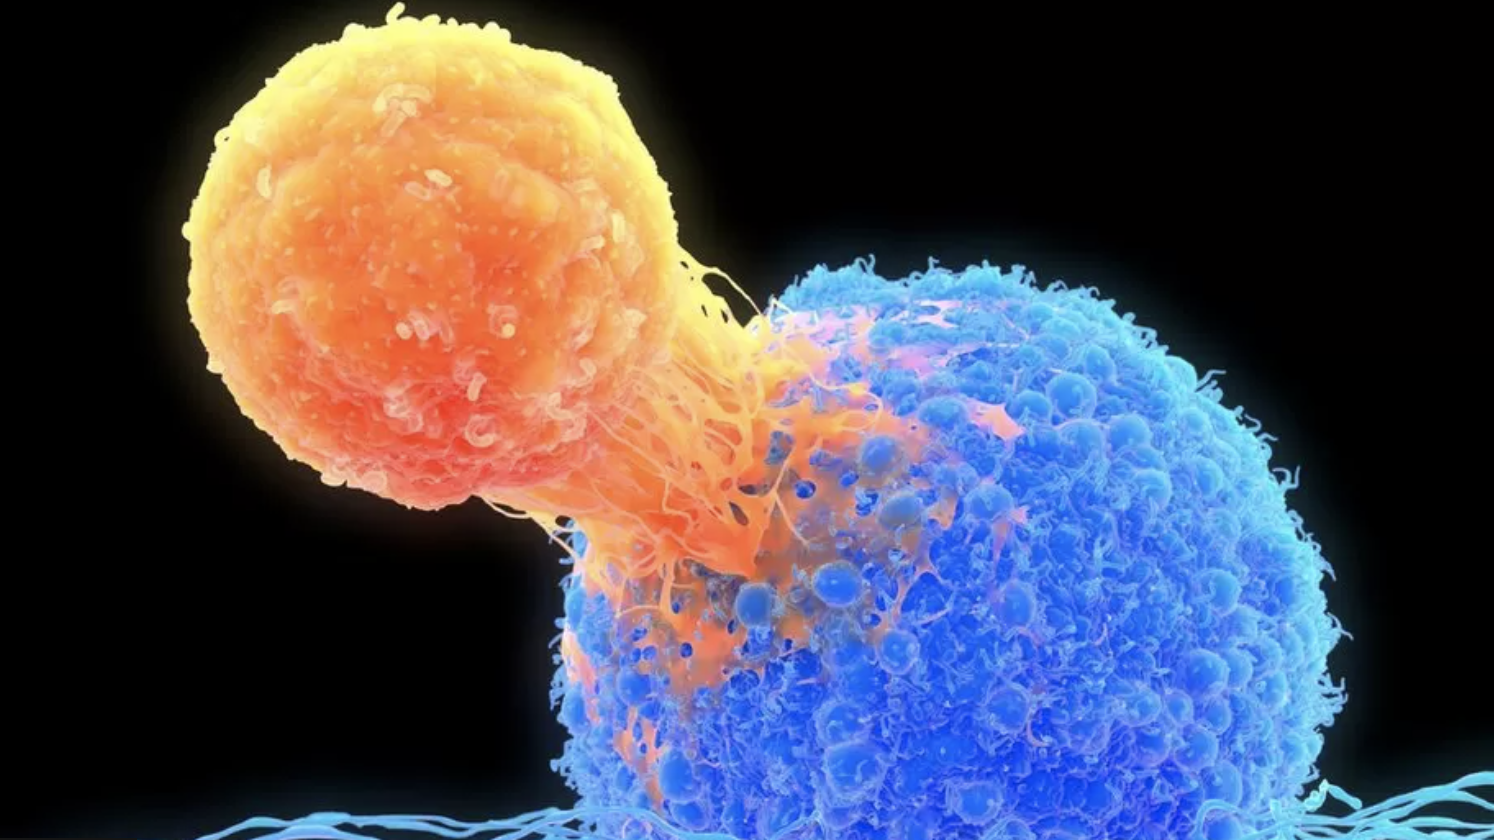 Görsel: T? hücresi (turuncu), kanserli hücreye saldırıyor